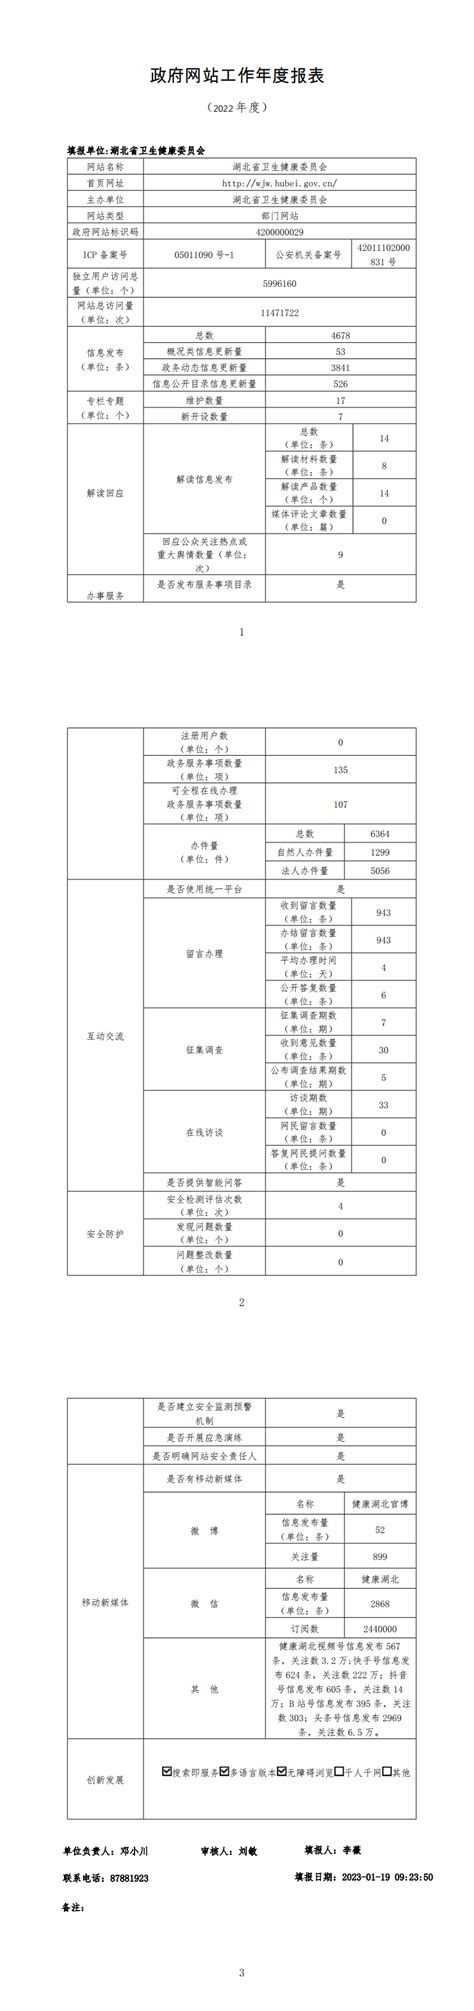 湖北省卫生健康委员会2020年政府信息公开工作年度报告-湖北省卫生健康委员会